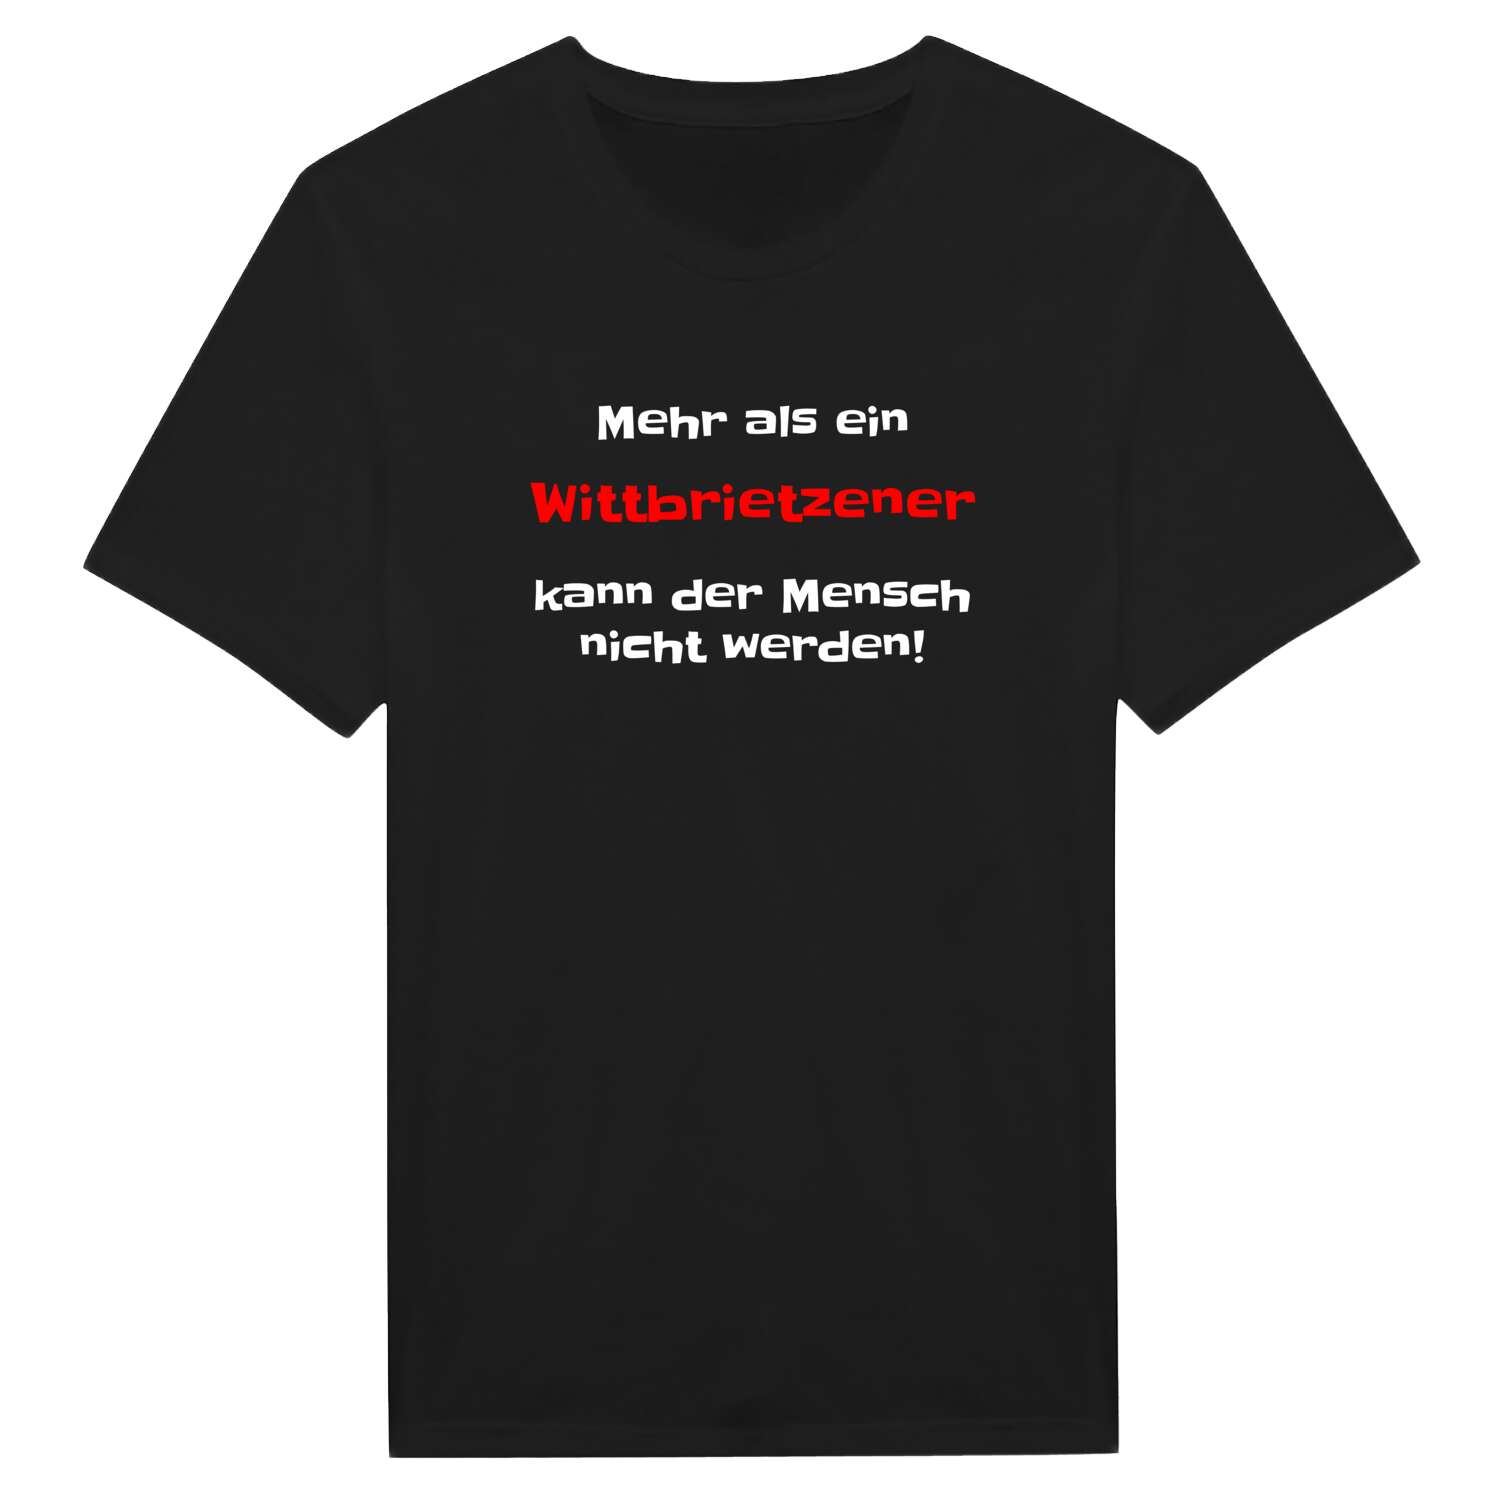 Wittbrietzen T-Shirt »Mehr als ein«